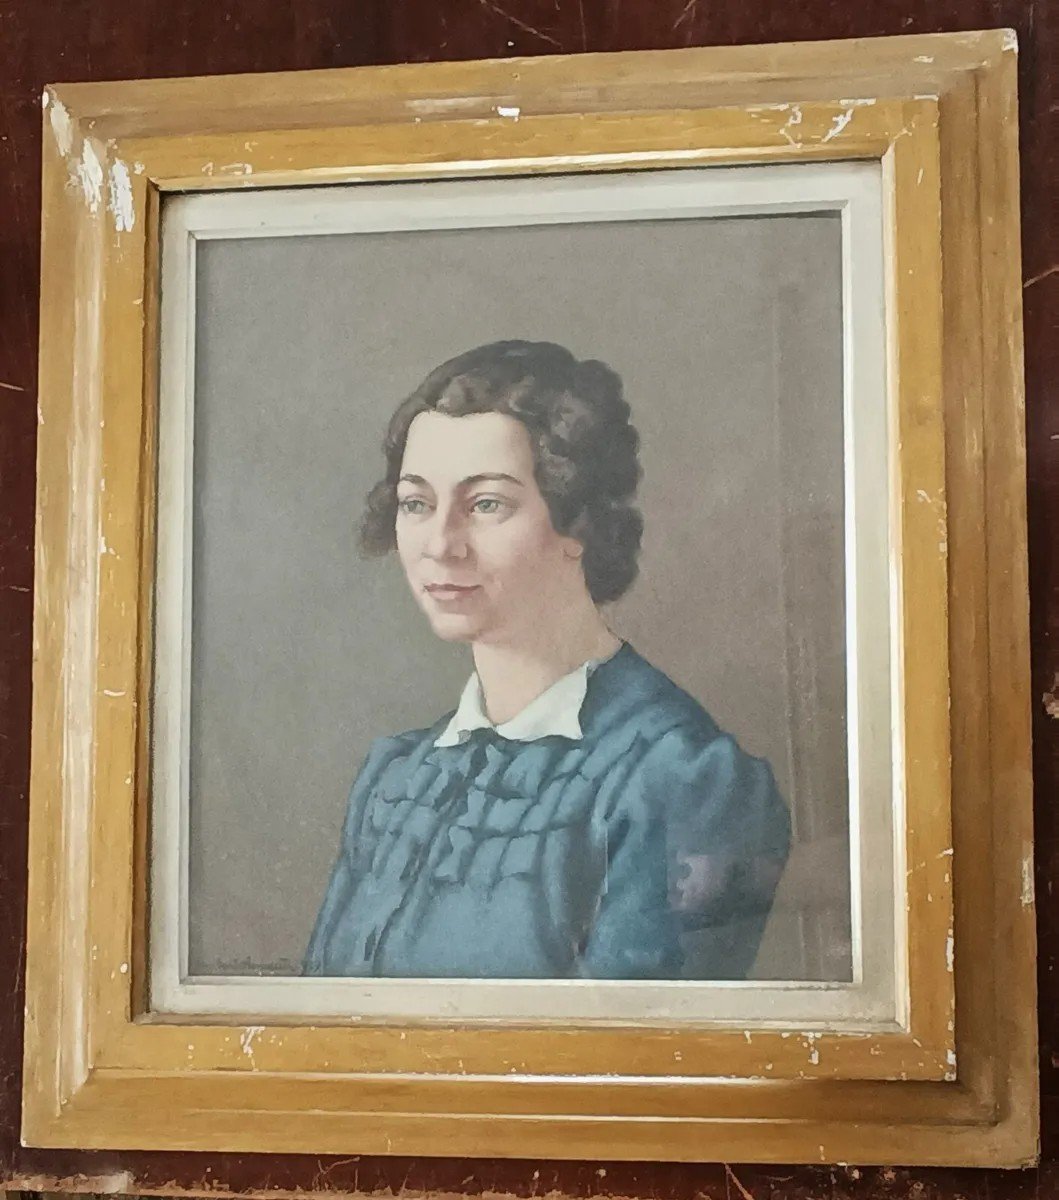 Dipinto ritratto femminile -Olio su tavola-Umberto Benedetti (Firenze 1895-1951)